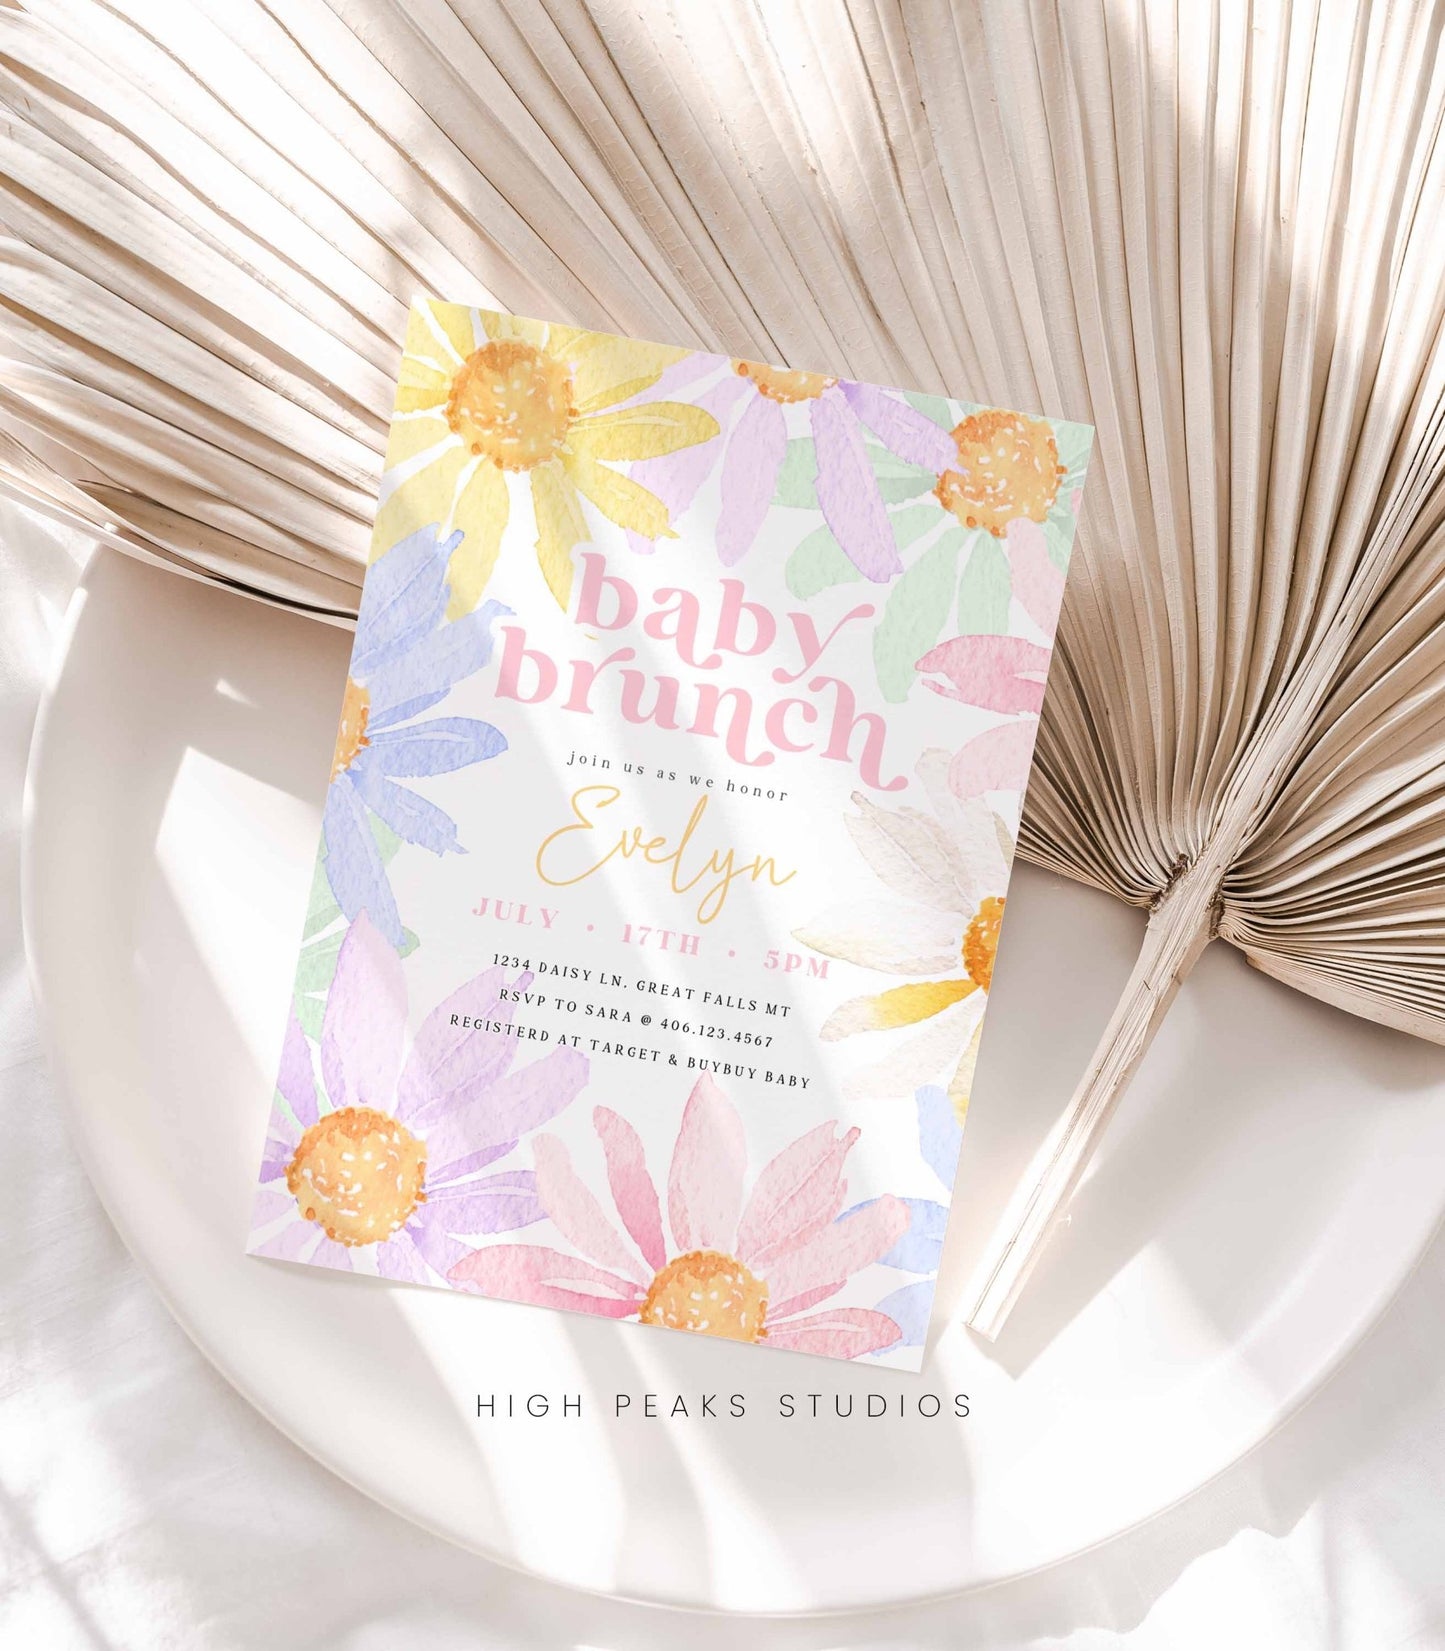 Pastel Daisy Baby Brunch Invitation - High Peaks Studios